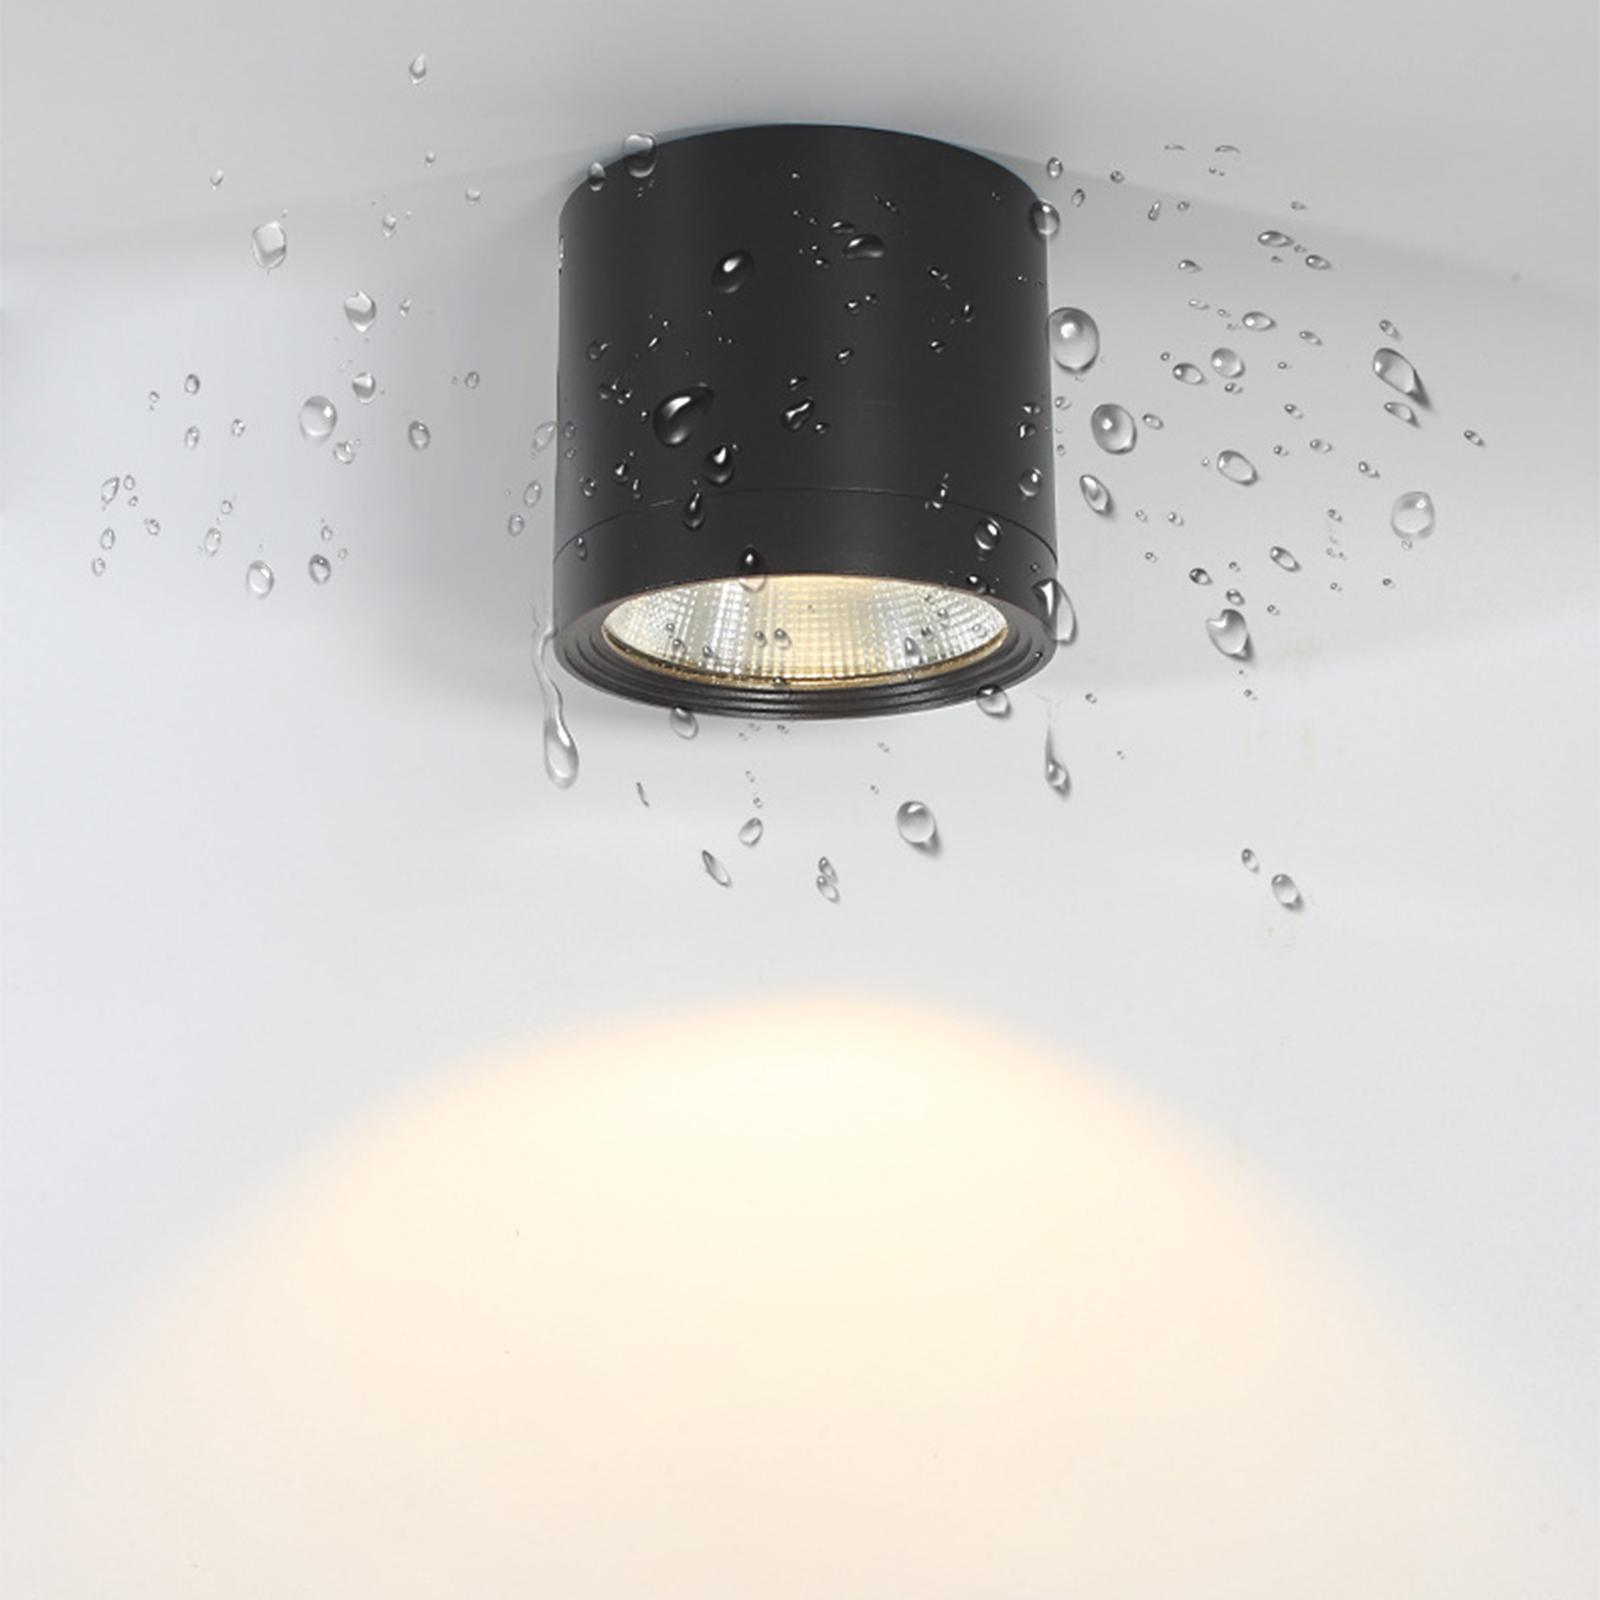 Ceiling Downlights 12W Black Spot Light for Under Eave Bathroom Living Room White